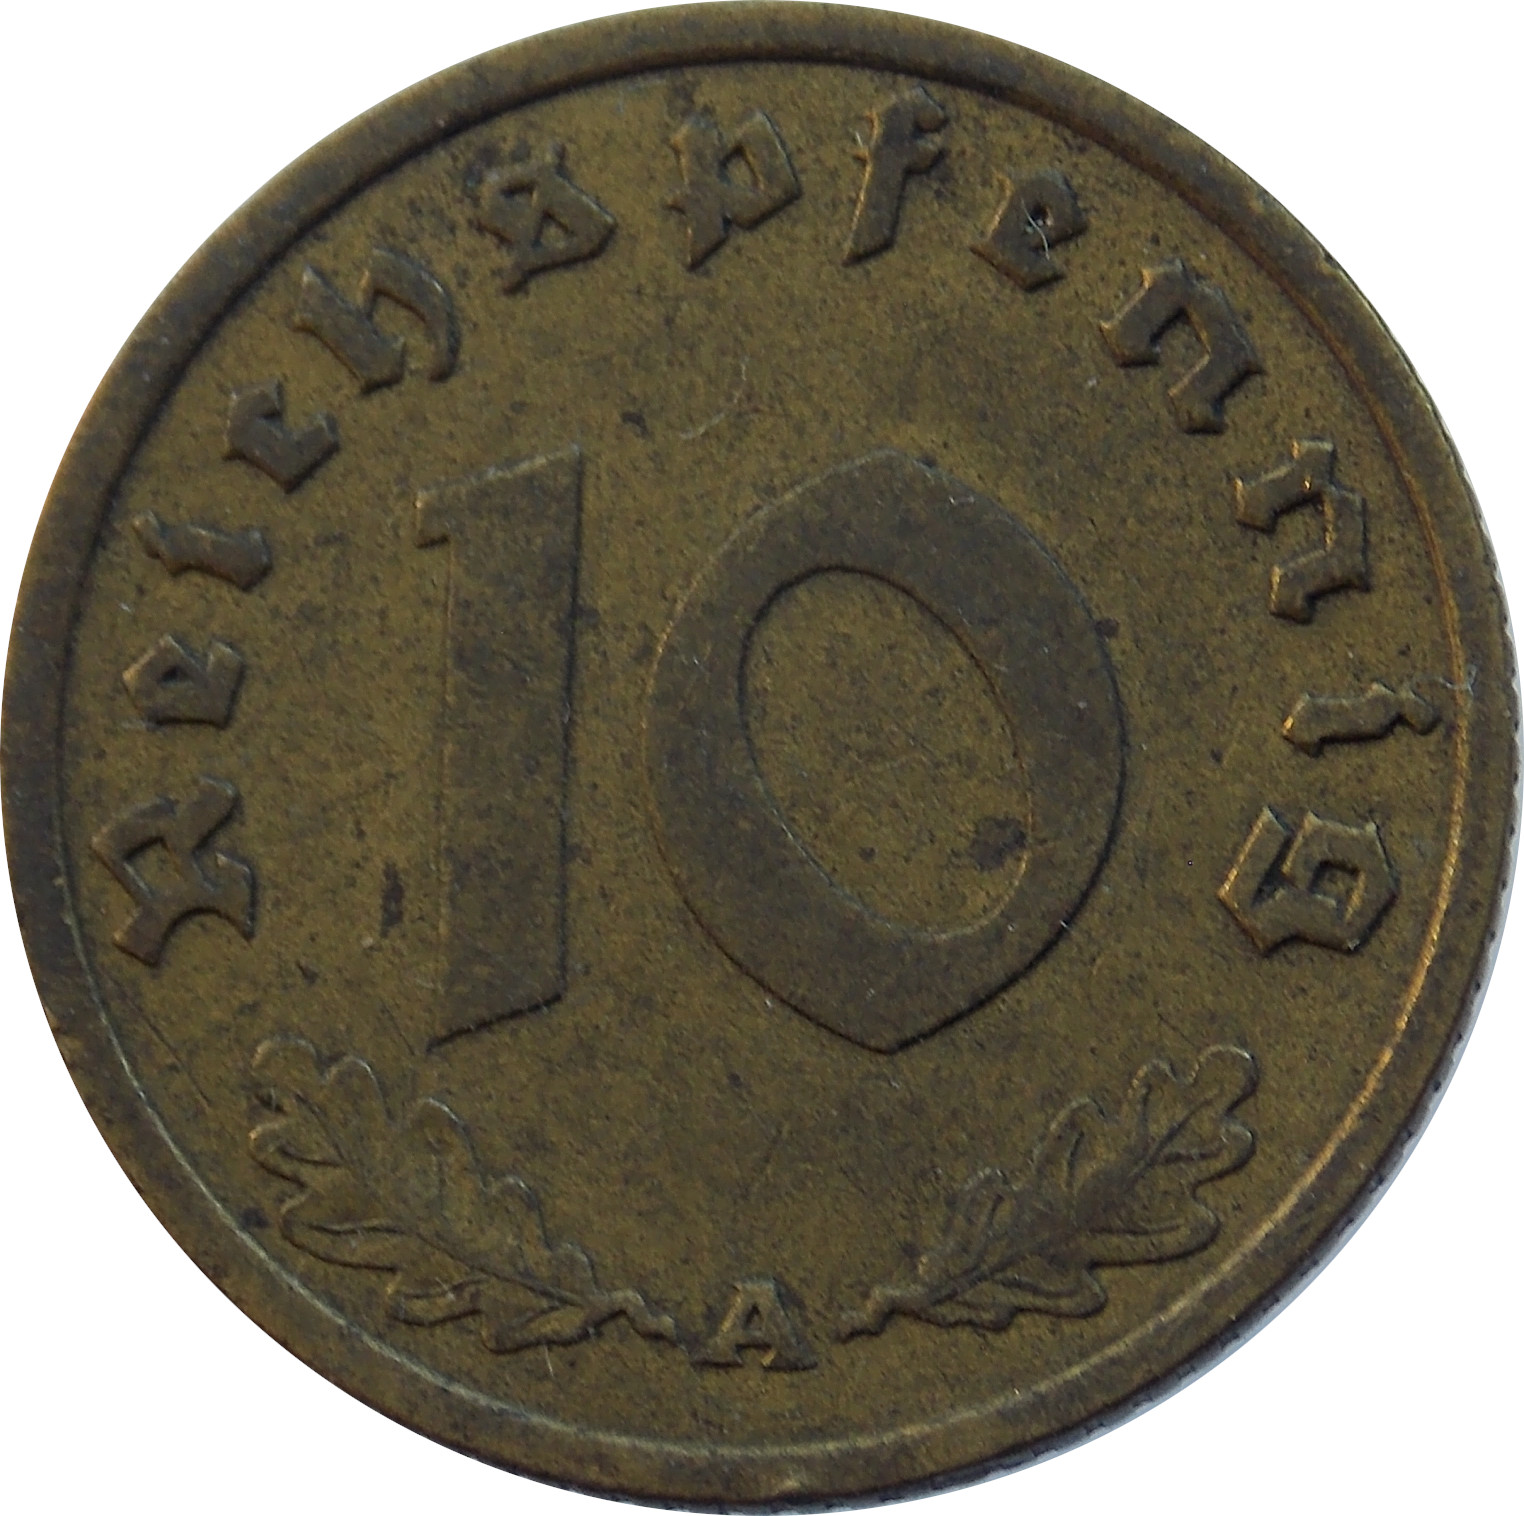 Nemecko - Tretia ríša 10 Reichspfennig 1938 A